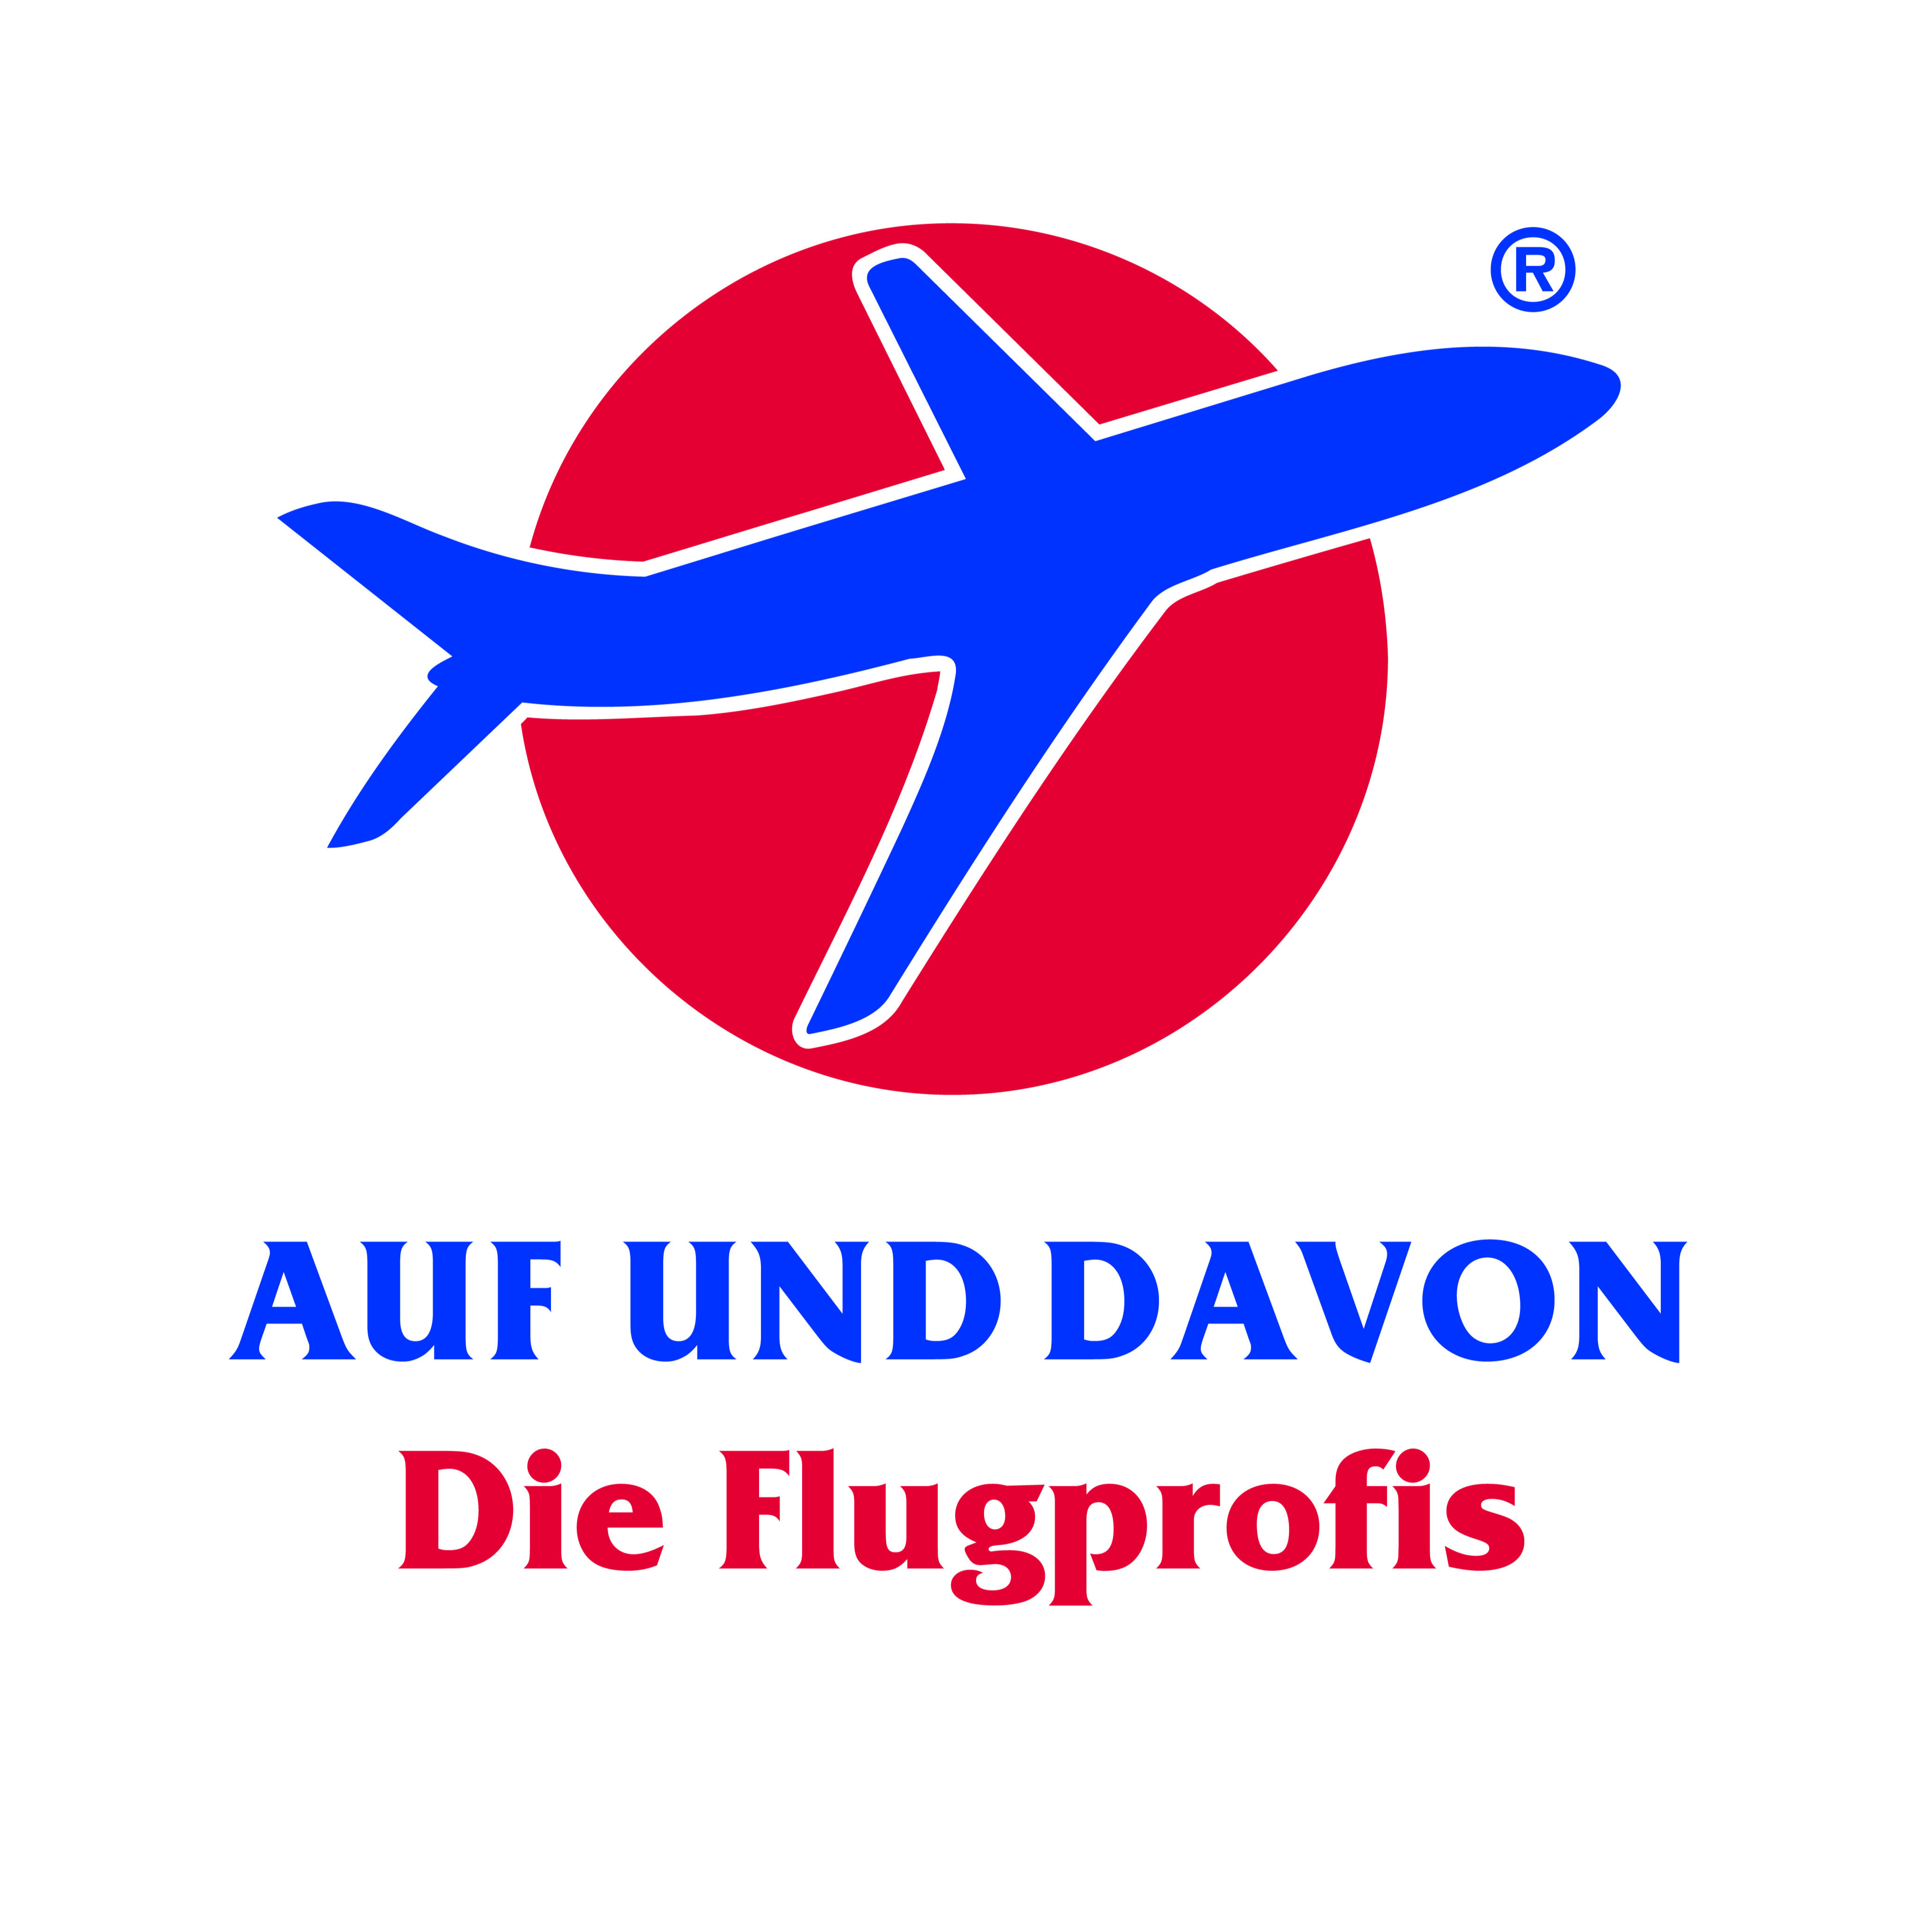 AUF UND DAVON - Die Flugprofis in Halle (Saale) - Logo